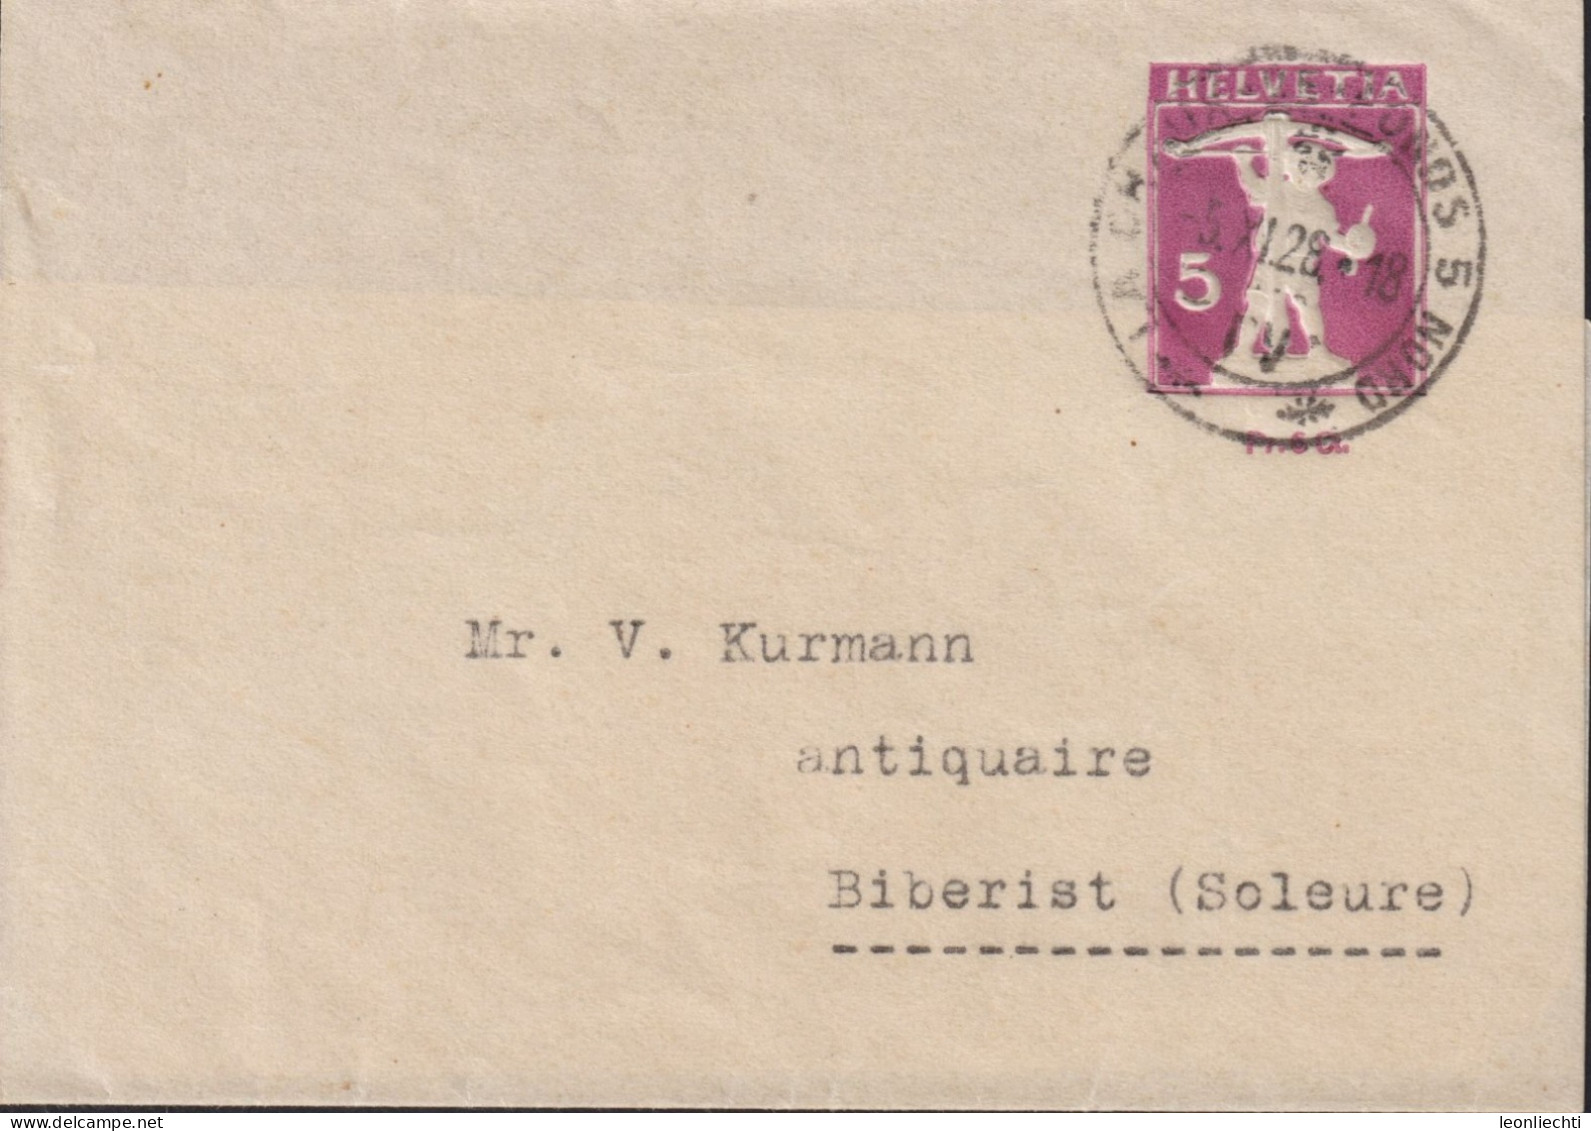 1928 Schweiz Streifband Zum: 42, 5 Cts - Pr.6 Cts, Grauviolett Tell Knabe, ⵙ LA CHAUX DE FONDS - NORD - Enteros Postales